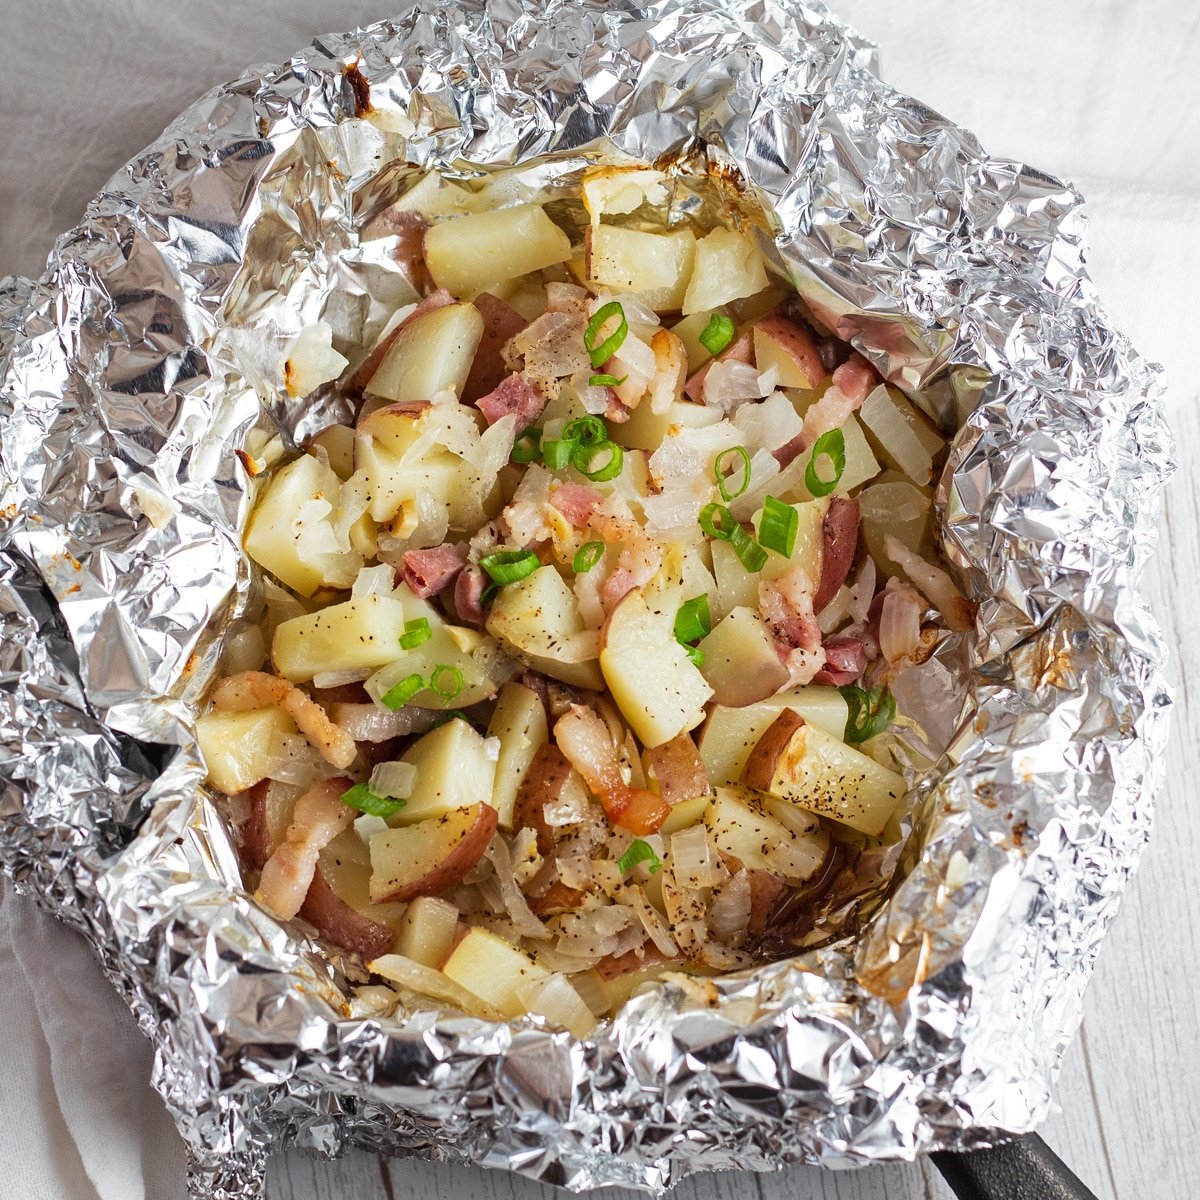 Crveni krumpir narežite u foliji sa slaninom, lukom i češnjakom.